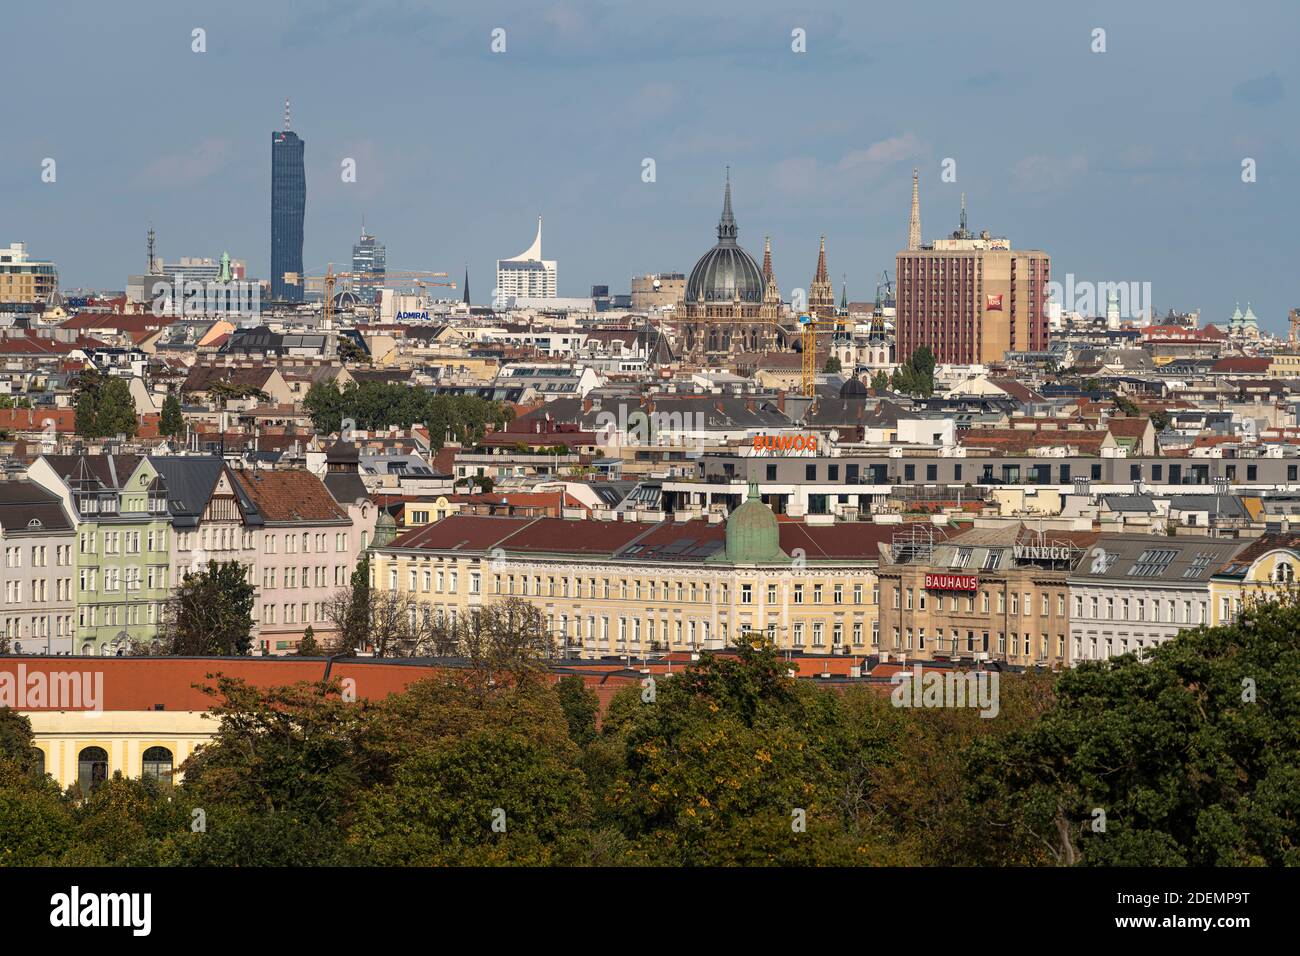 Blick von der Gloriette über die Dächer von Wien, Österreich, Europa  |  Gloriette view over Vienna, Austria, Europe Stock Photo